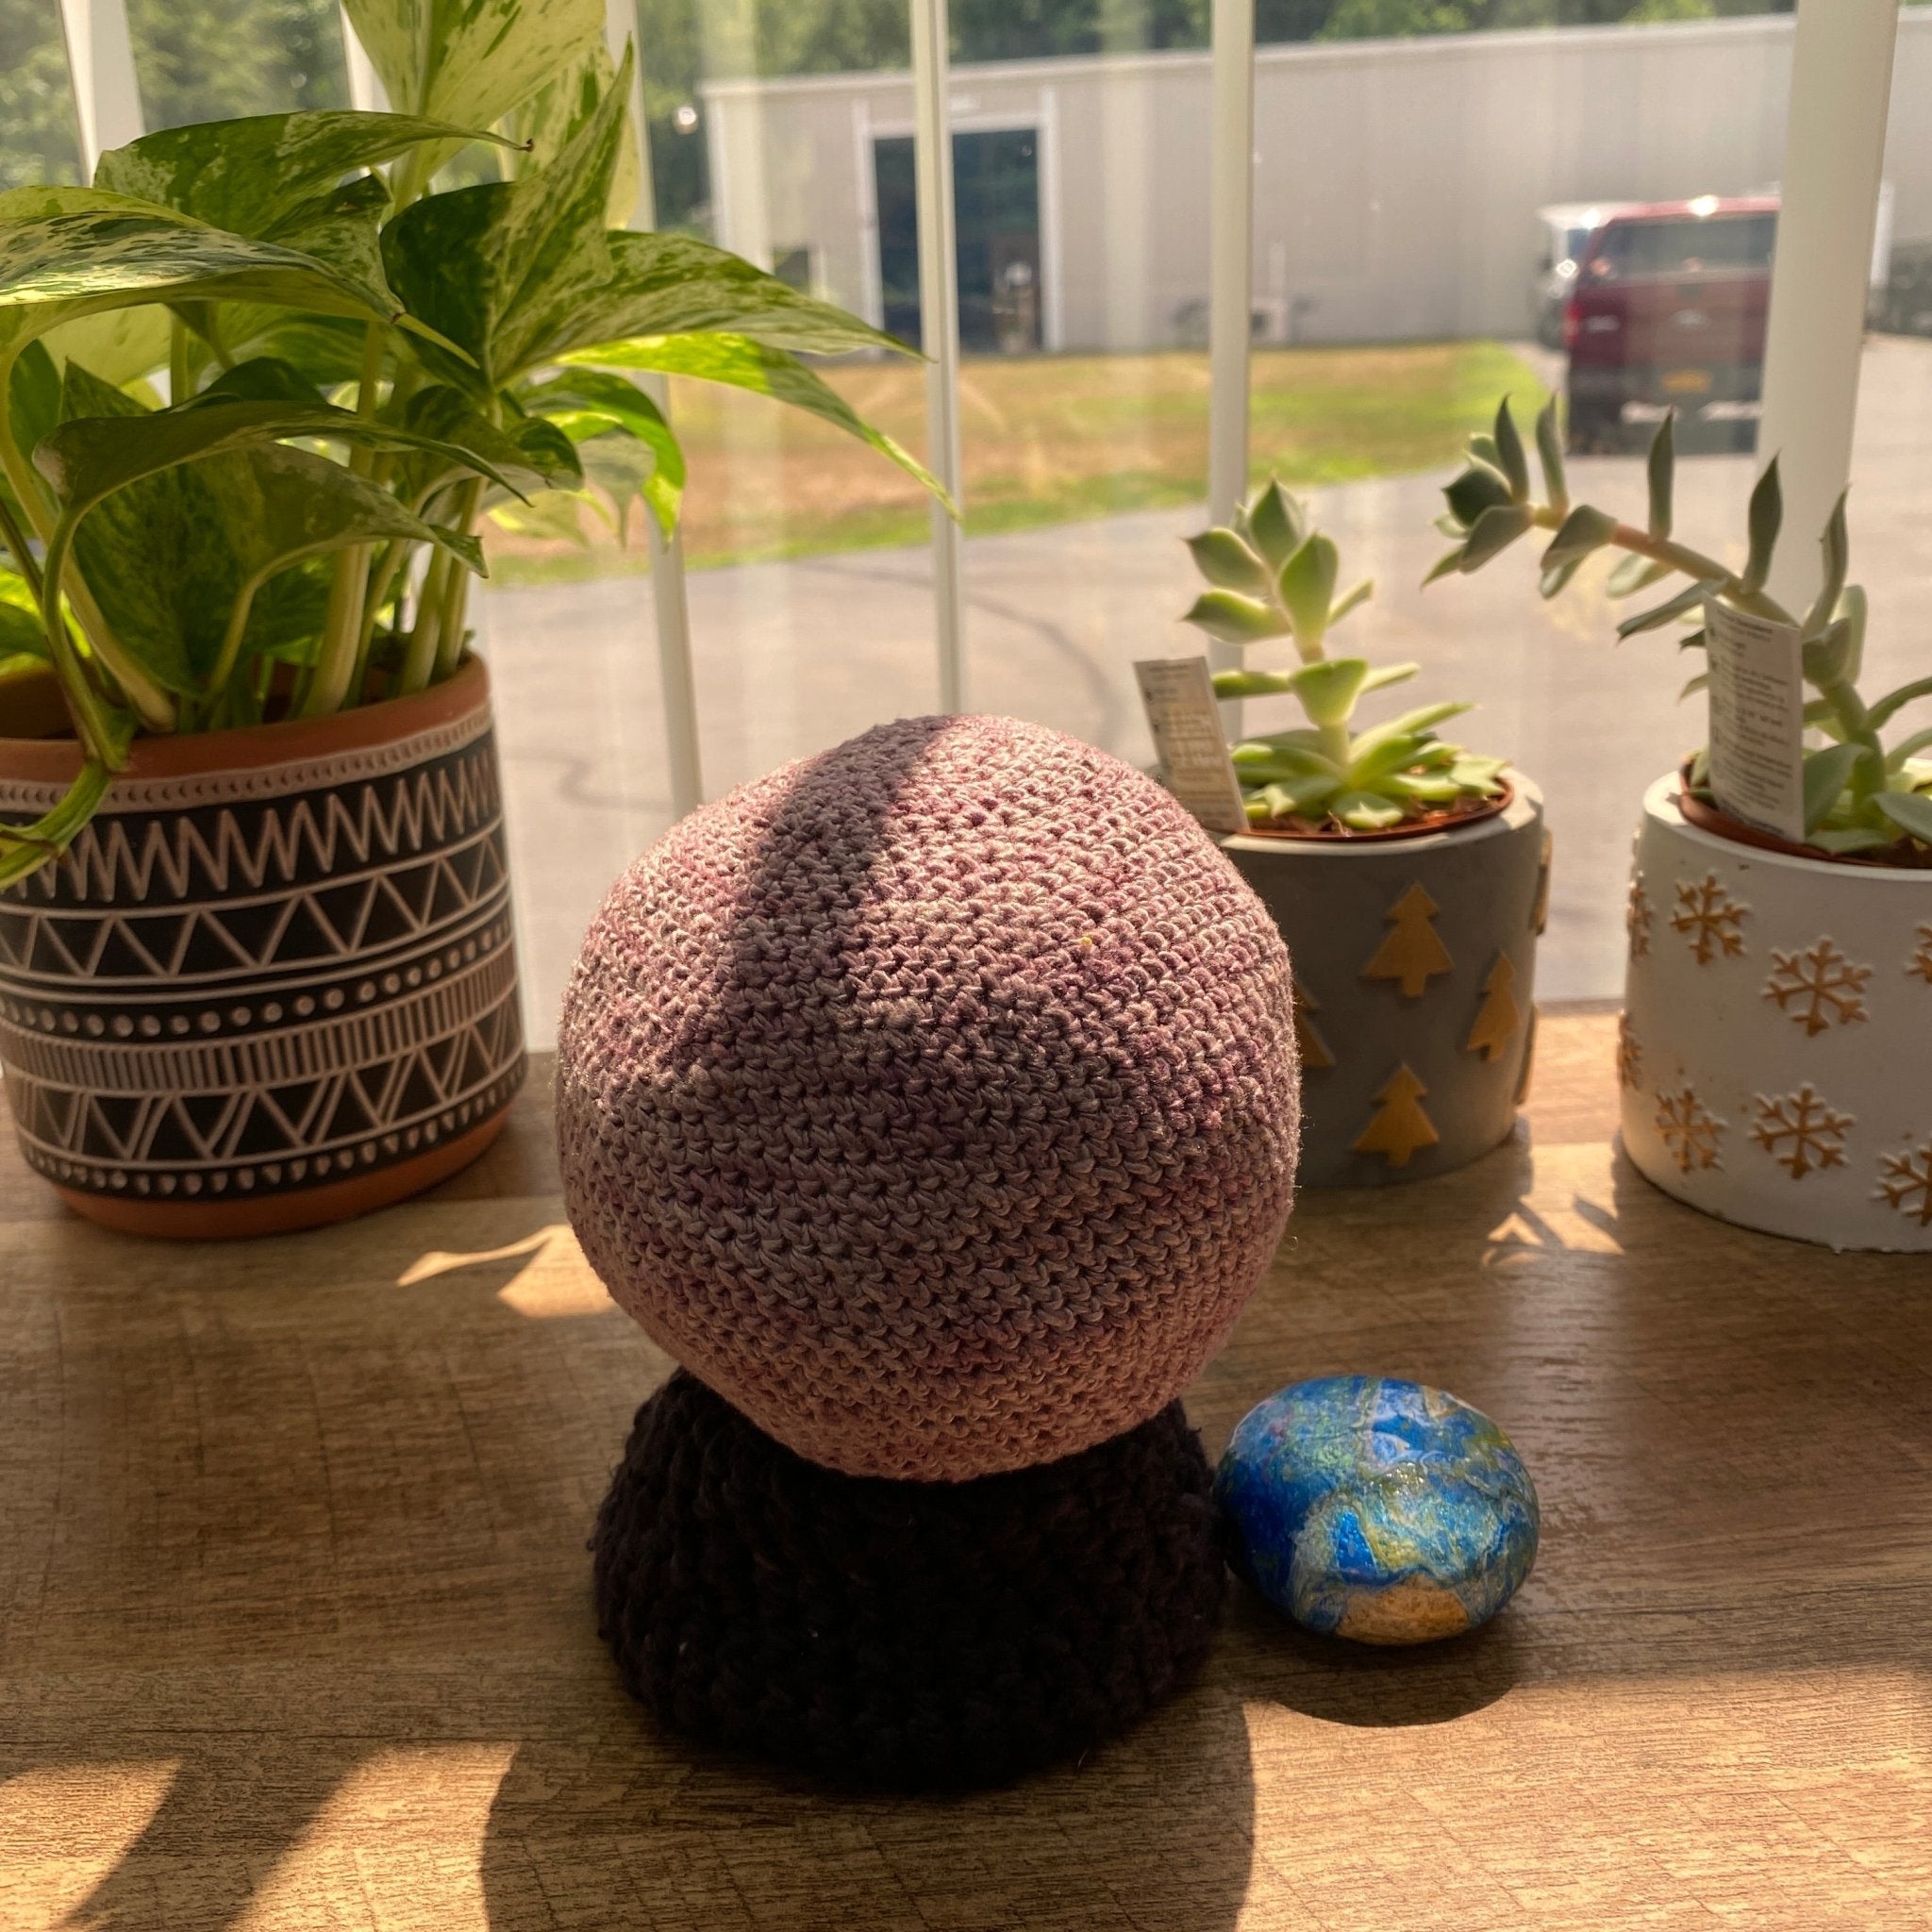 Crystal Ball Amigurumi | Magical Crochet Tutorial - Darn Good Yarn